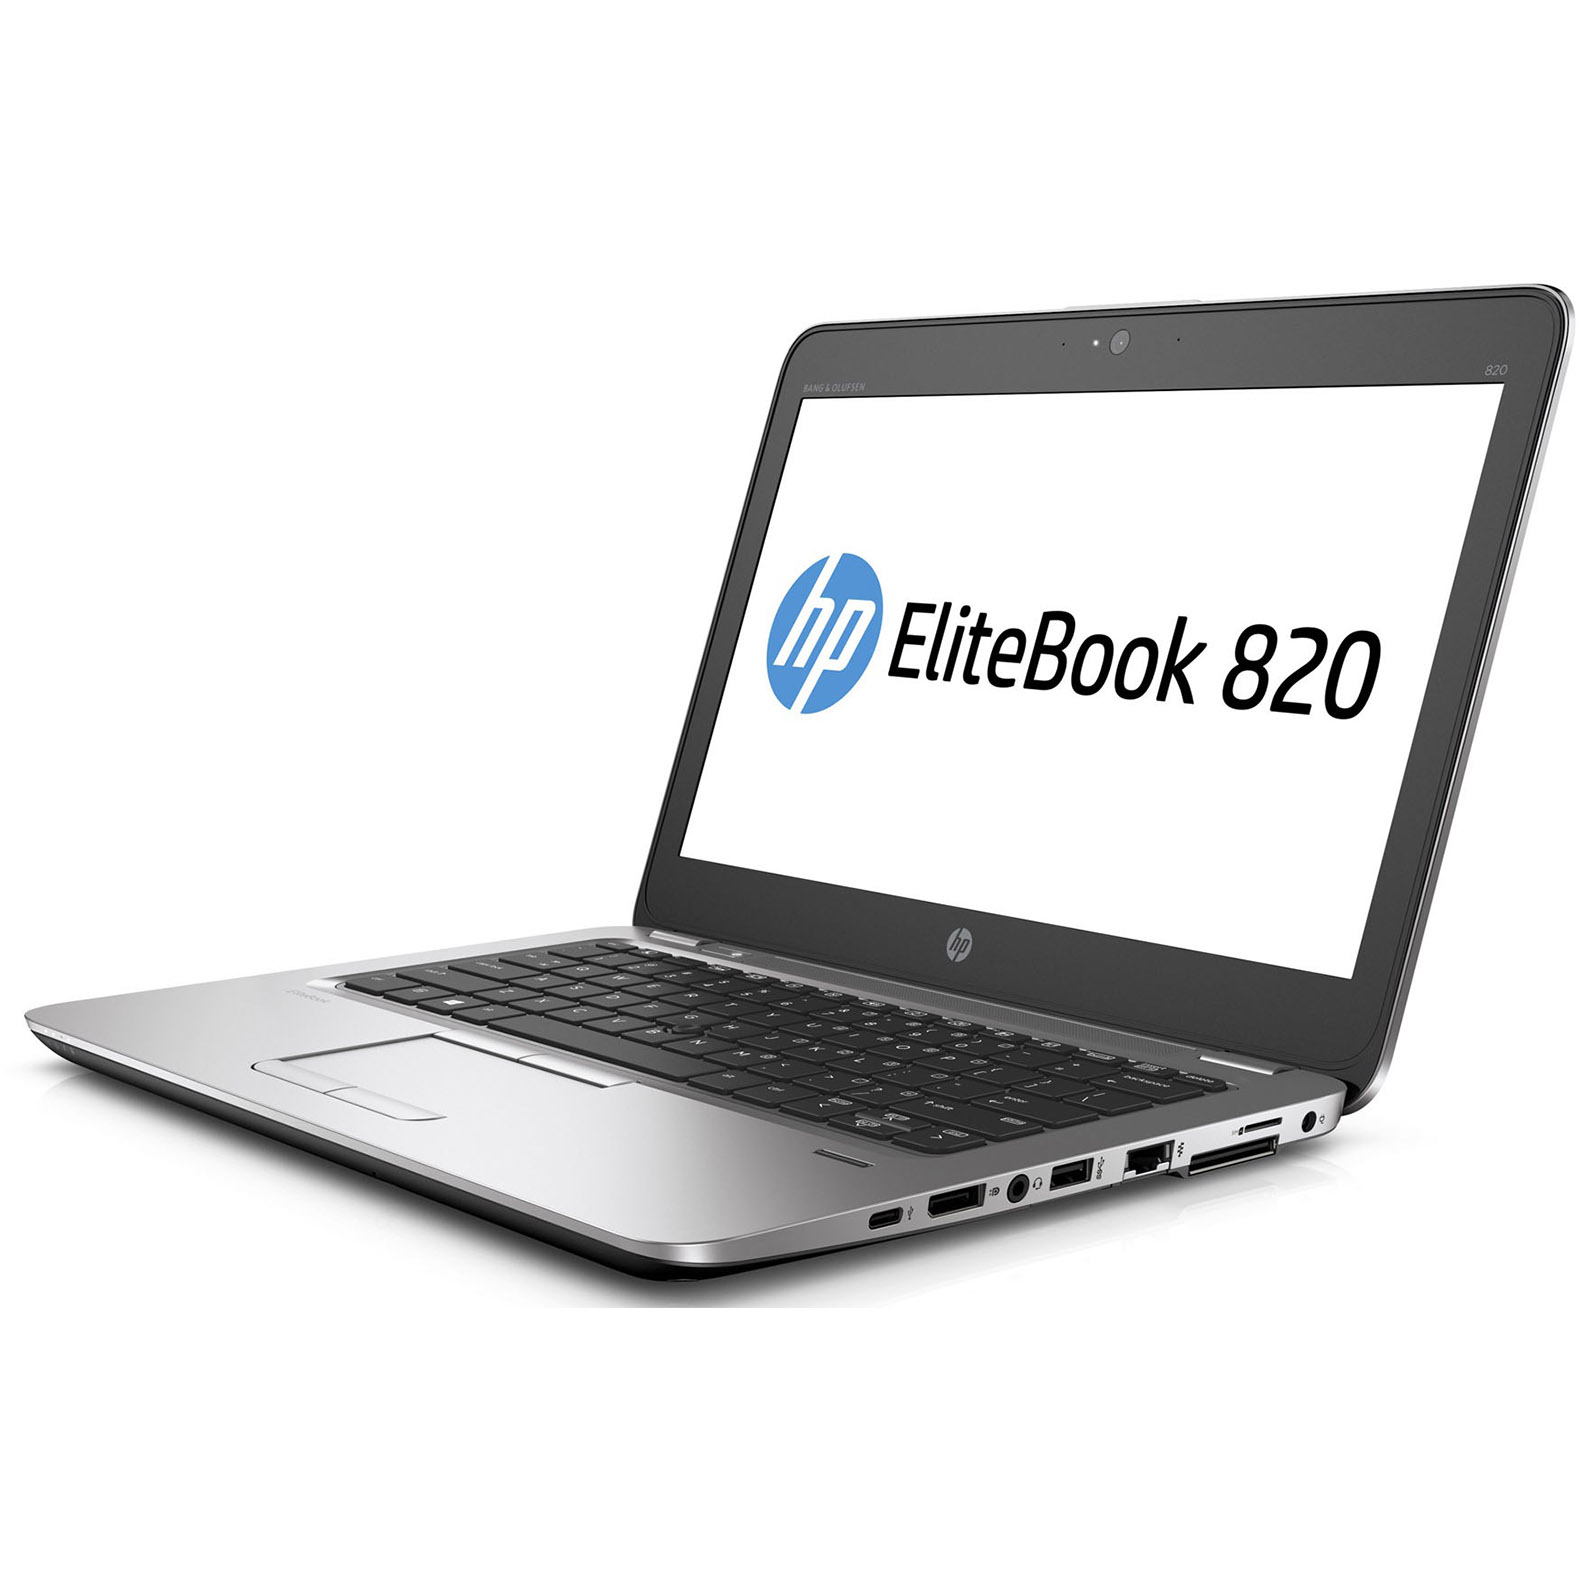 HP Elitebook 820 G2 i5 8GB RAM 5th Gen 500GB HDD